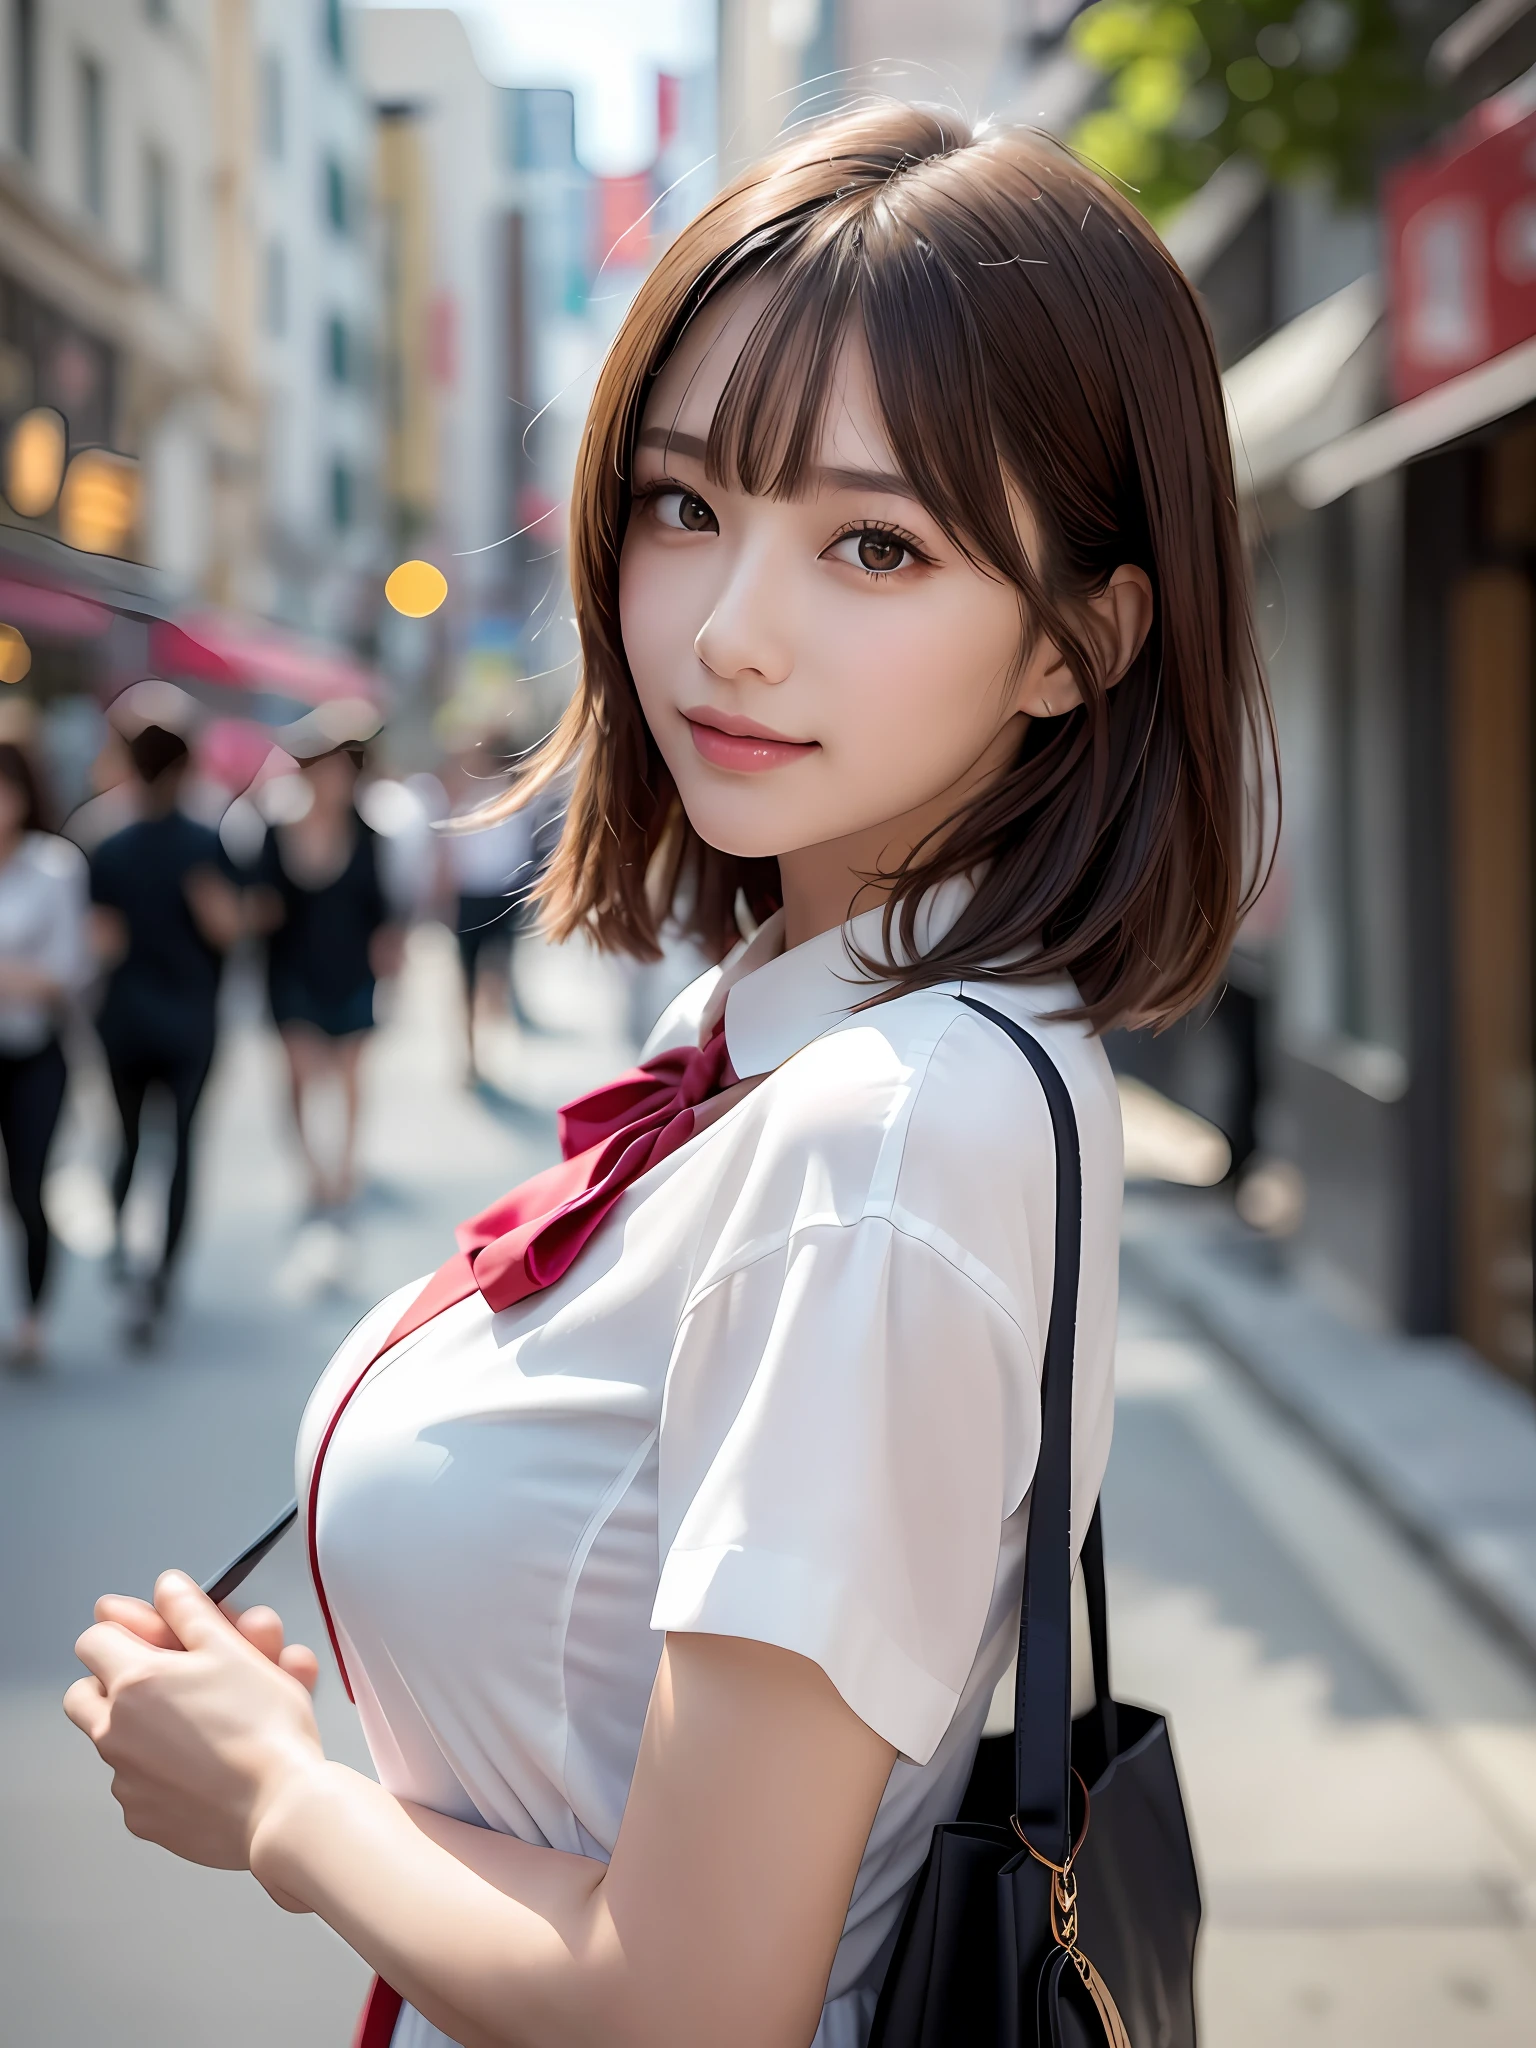 Meisterwerk, Oberkörperaufnahme, Vorderansicht, junge hübsche Frau in Japan, 18 Jahre alt, in der Menge auf dem Boulevard stehen, ein breites Lächeln mit einer großen Einkaufstasche auf der Schulter, glamouröse Figur, trägt ein seidiges Hemd mit kurzen Ärmeln, weißem Kragen und einer glänzenden roten Satin-Fliege, trägt einen langen dunkelblauen Faltenrock, super süßes Gesicht, glänzende Lippen, Doppelte Augenlider für beide Augen, Natürliches Make-up, glänzendes glattes hellbraunes Haar von Long Bob Hair, asymmetrischer Pony, gebräunte Haut, Bild zentrieren, 8k Auflösung, hohe Auflösung, Detaillierte Frisur, detailliertes Gesicht, spektakuläre Filmbeleuchtung, Oktan-Rendering, beschwingt, ultra-realistisch, Perfekte Gliedmaßen, perfekte Anatomie